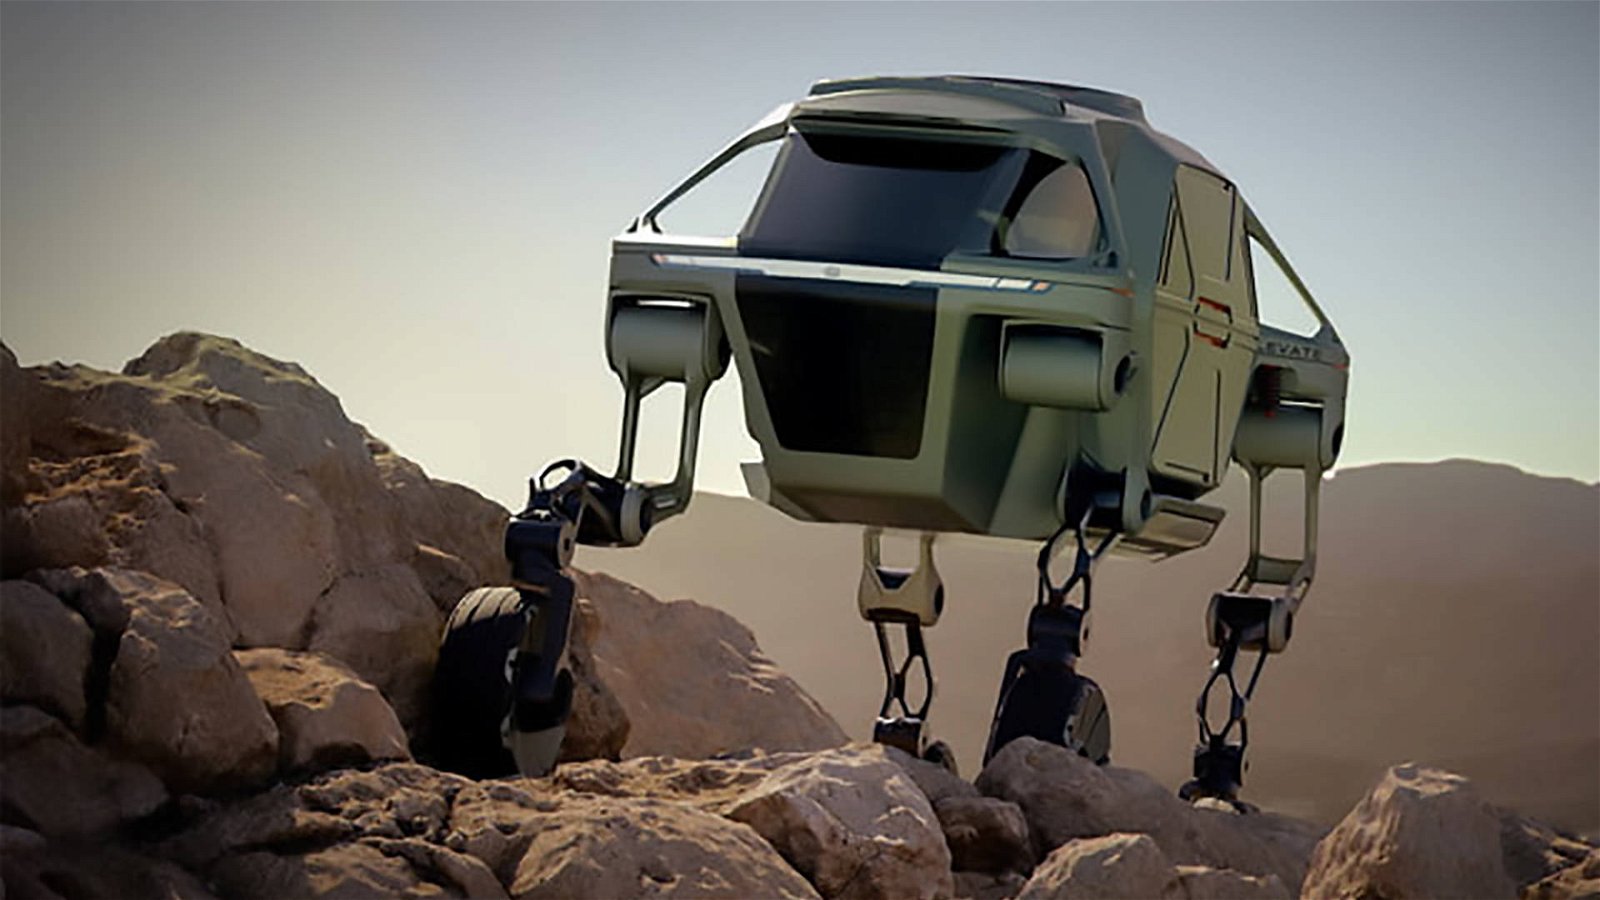 Immagine di Hyundai al CES 2019 con un veicolo dotato di "zampe" in stile Star Wars